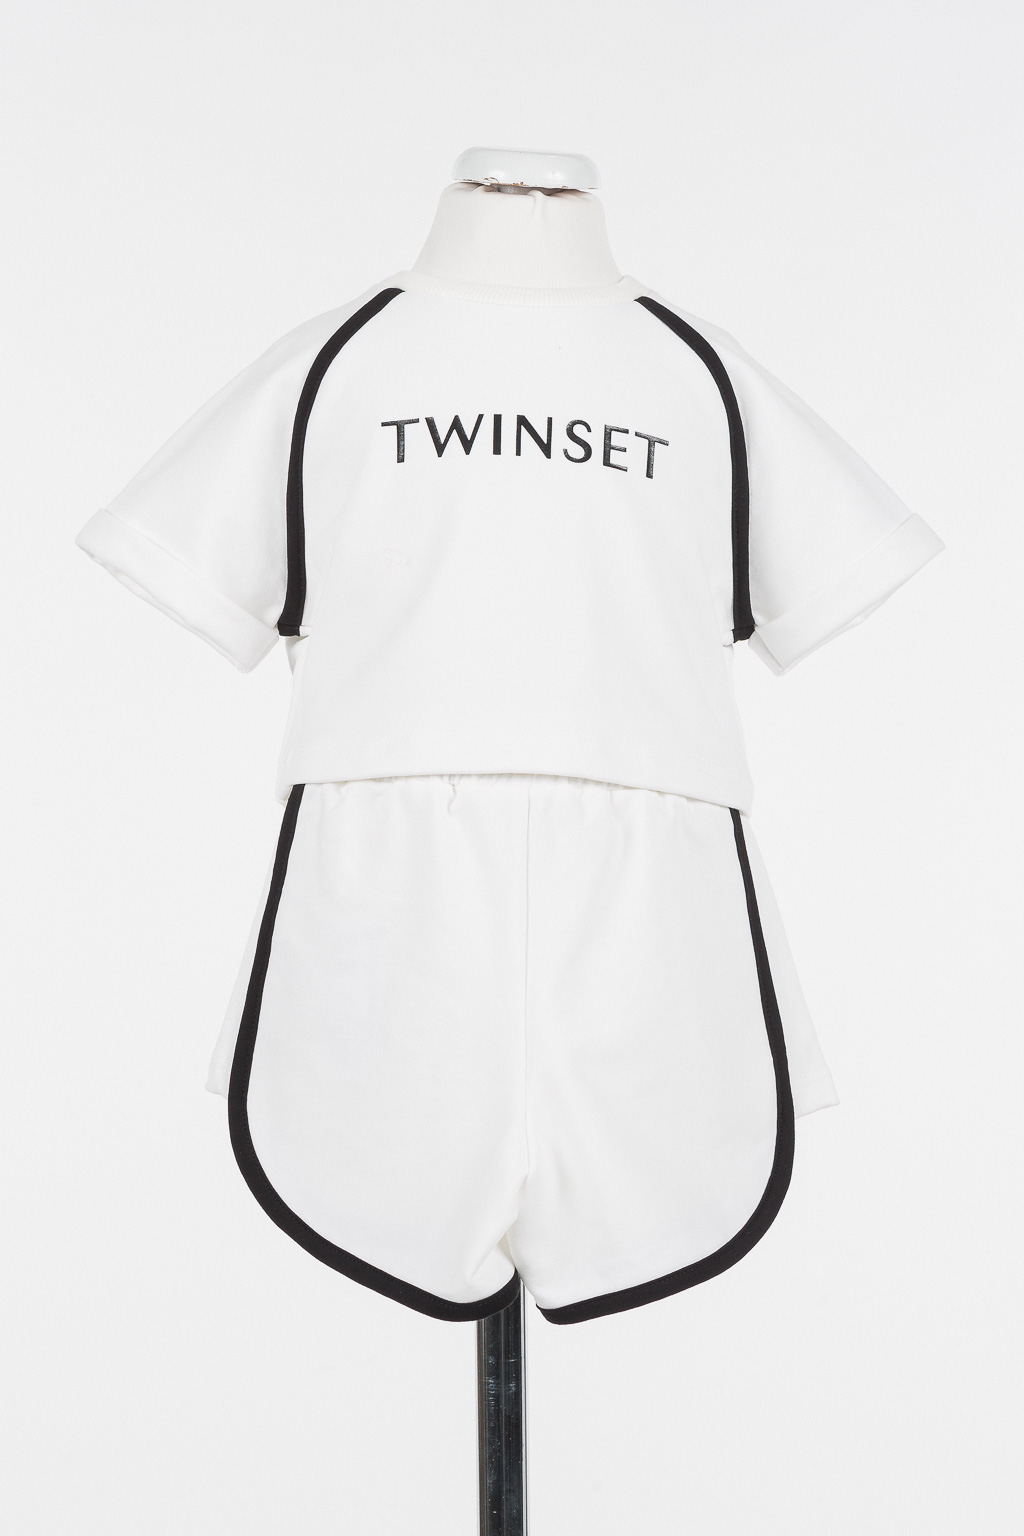 Twinset Girl Set trička s krátkým rukávem a šortek bílý TWINSET velikost: 14